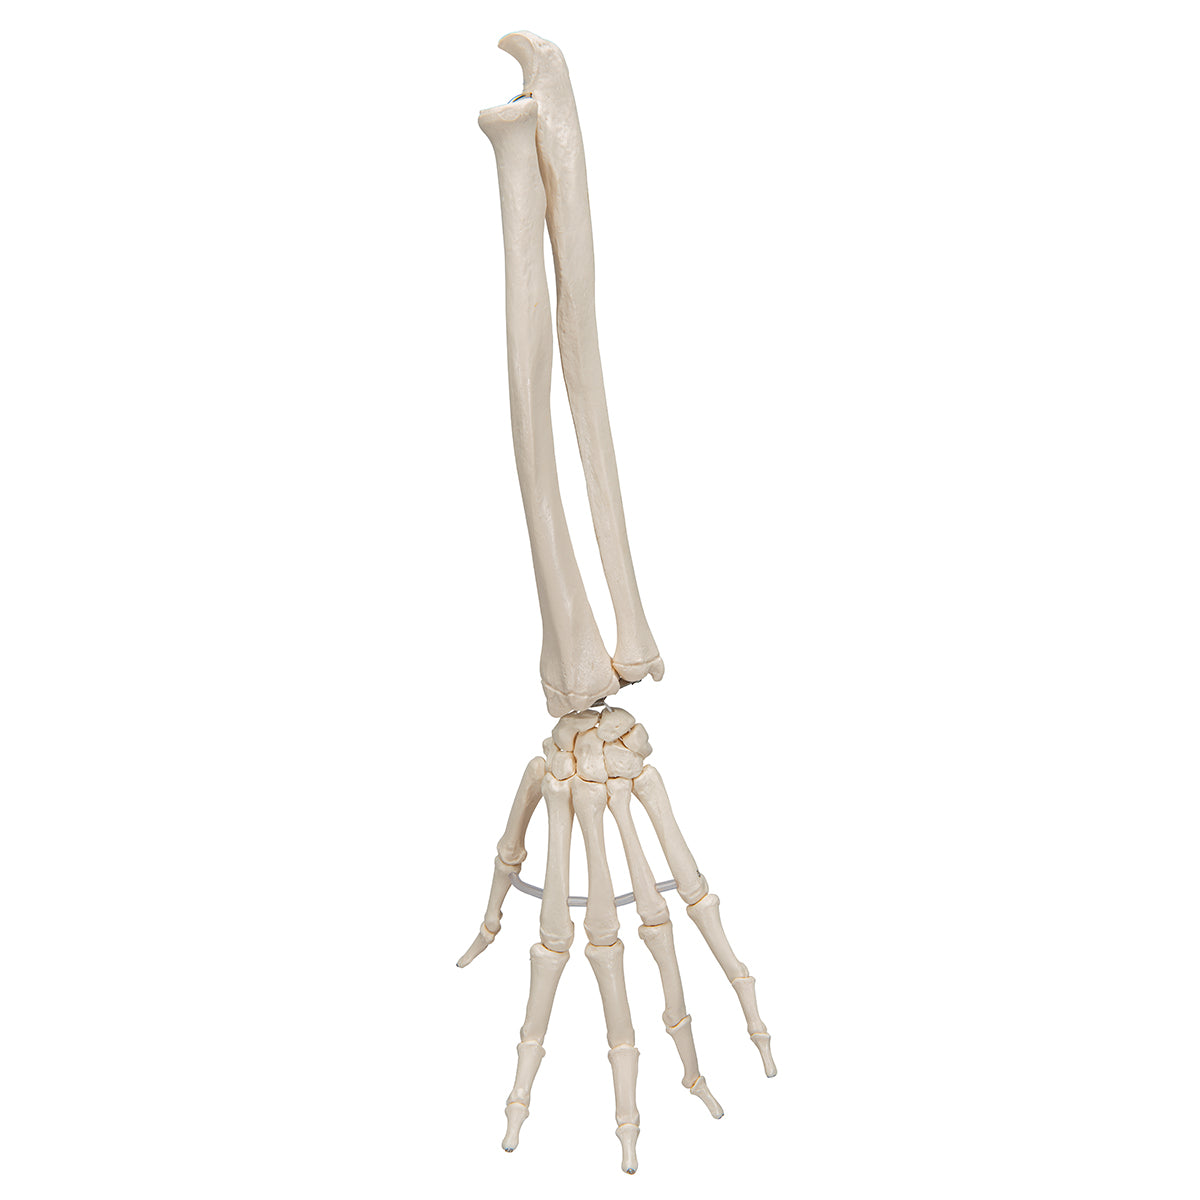 Model af håndens skelet samlet på elastikker samt begge underarmsknogler